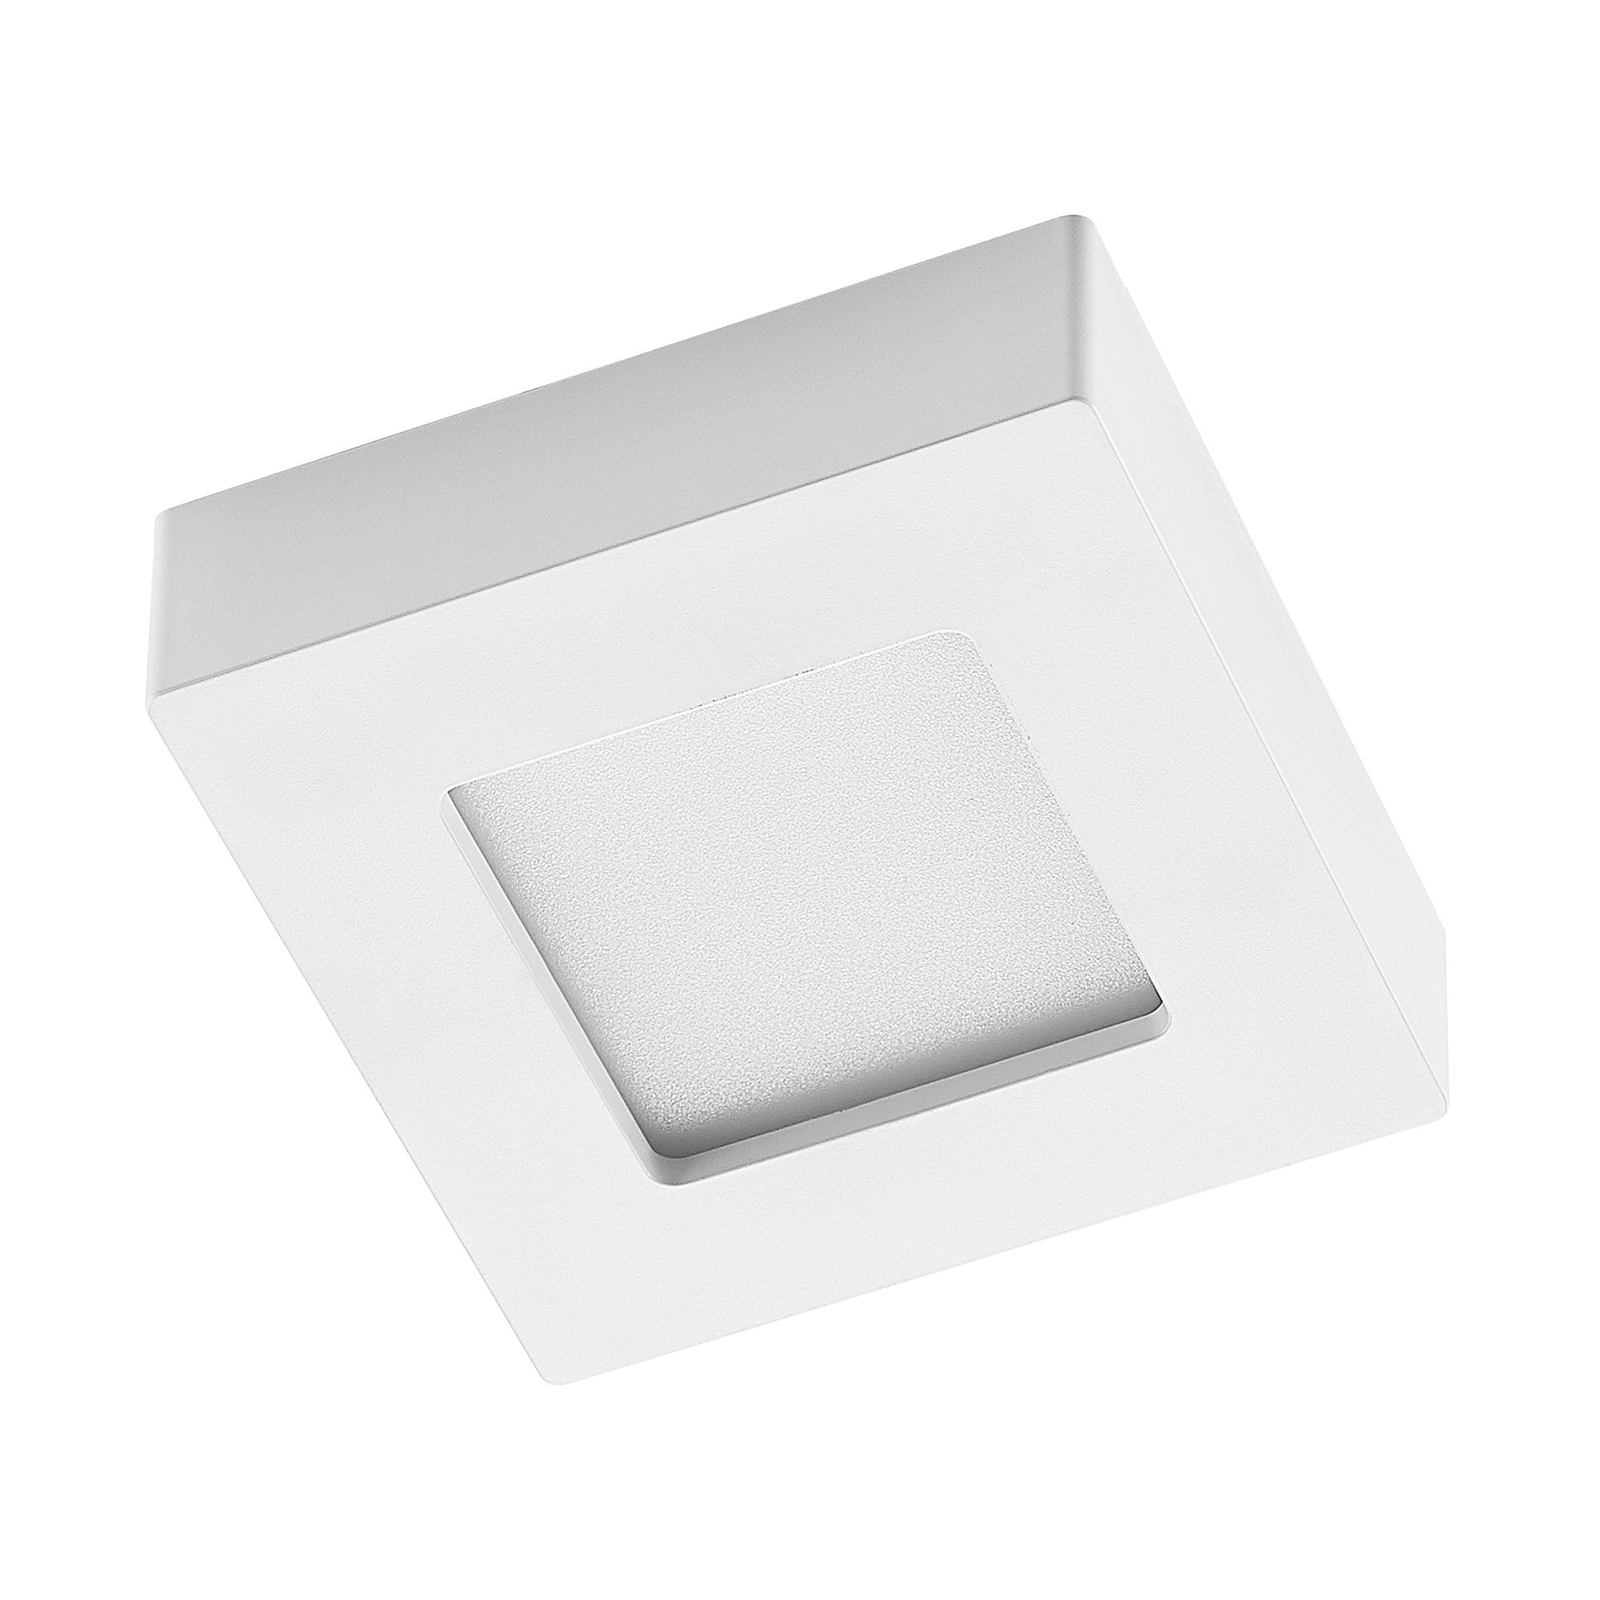 Prios Alette LED stropní svítidlo, bílé, 12,2 cm